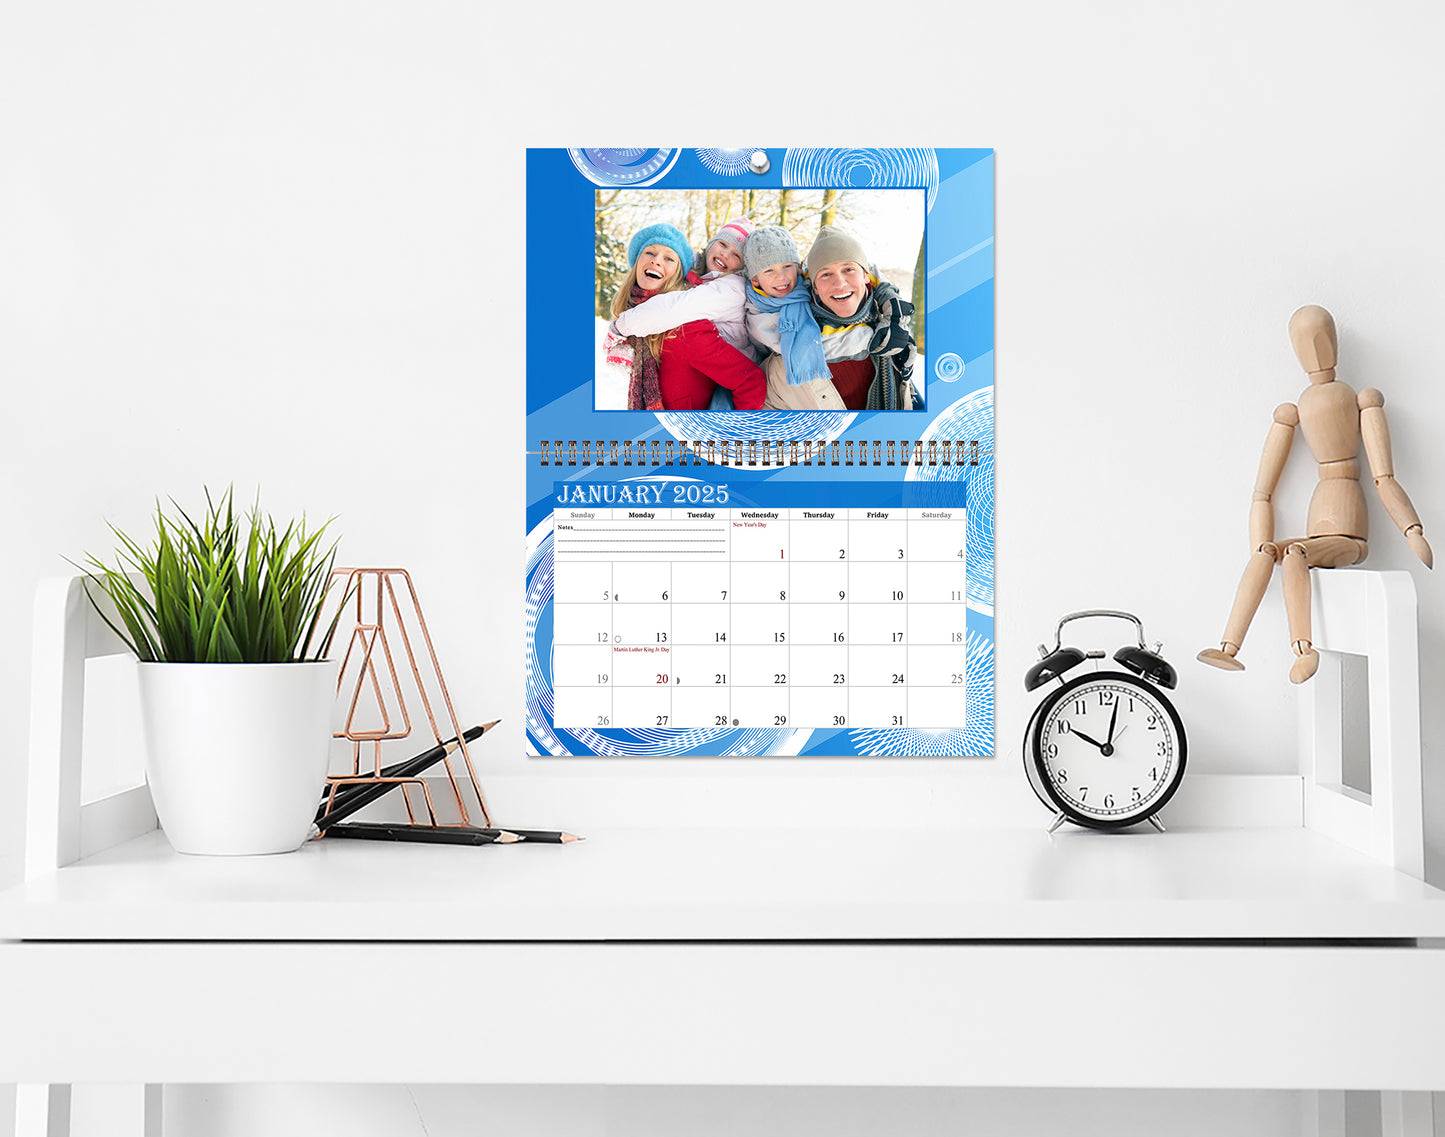 2025 Photo Frame Wall Spiral-bound Calendar (Add Your Own Photos) - 12 Months Desktop/Wall Calendar/Planner - (Edition #02).